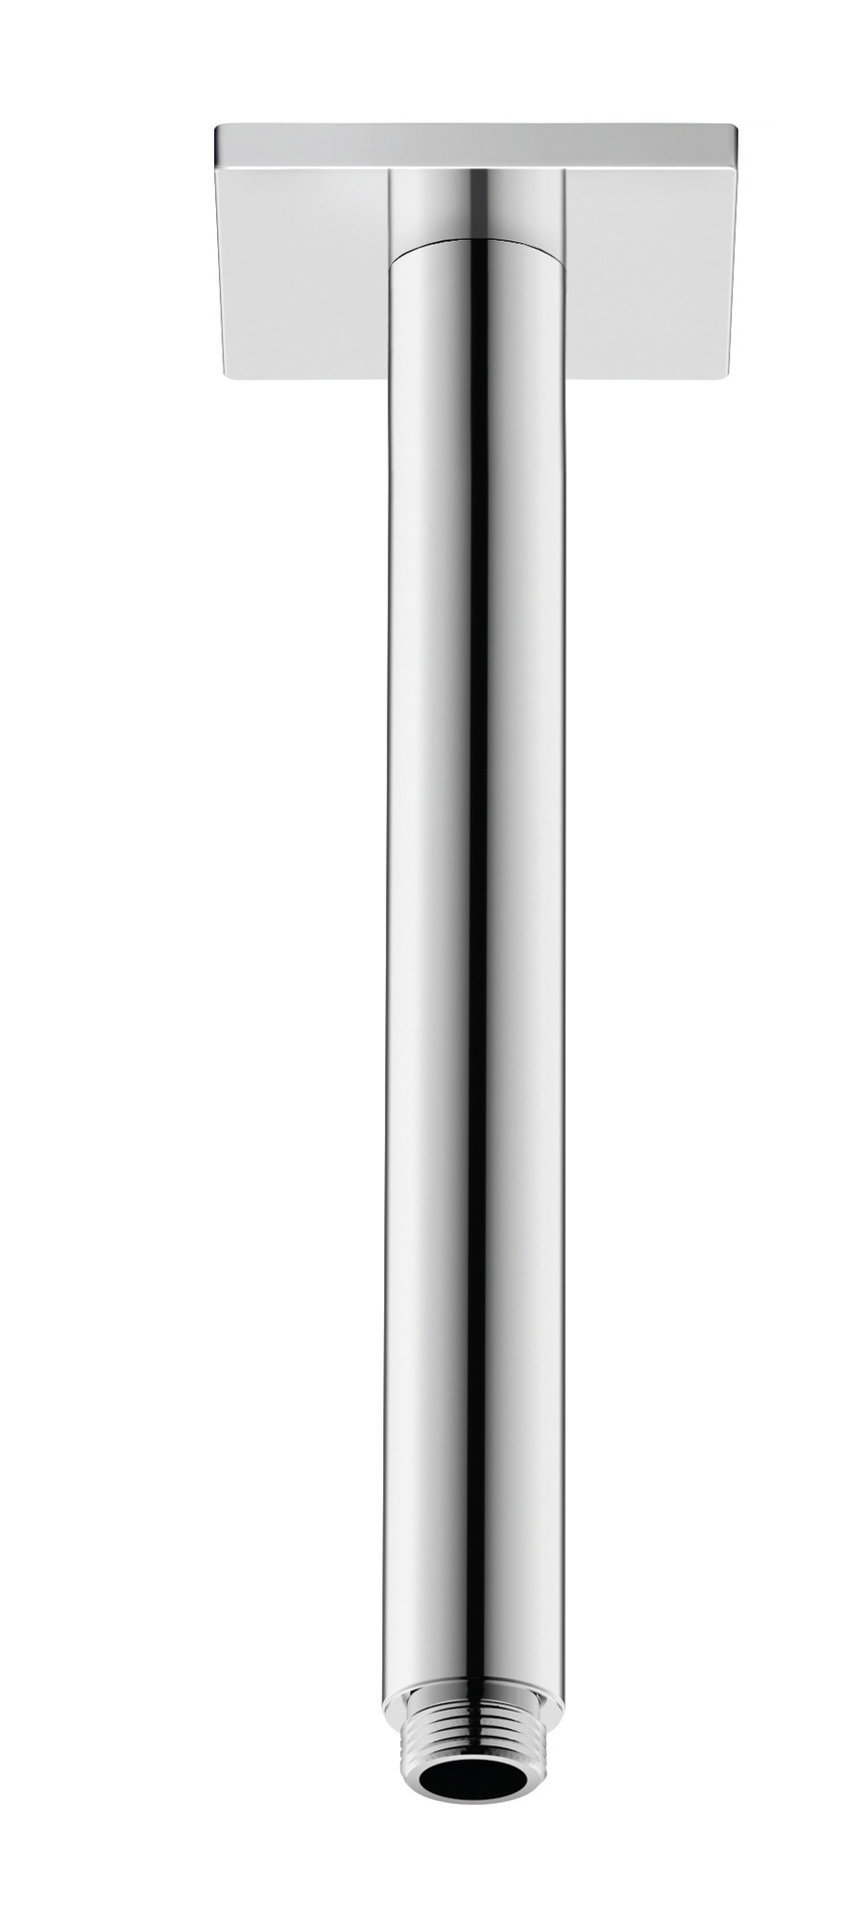 Duravit Brausearm Deckenanschluss 225 mm, eckige Rosette, chrom von Duravit AG